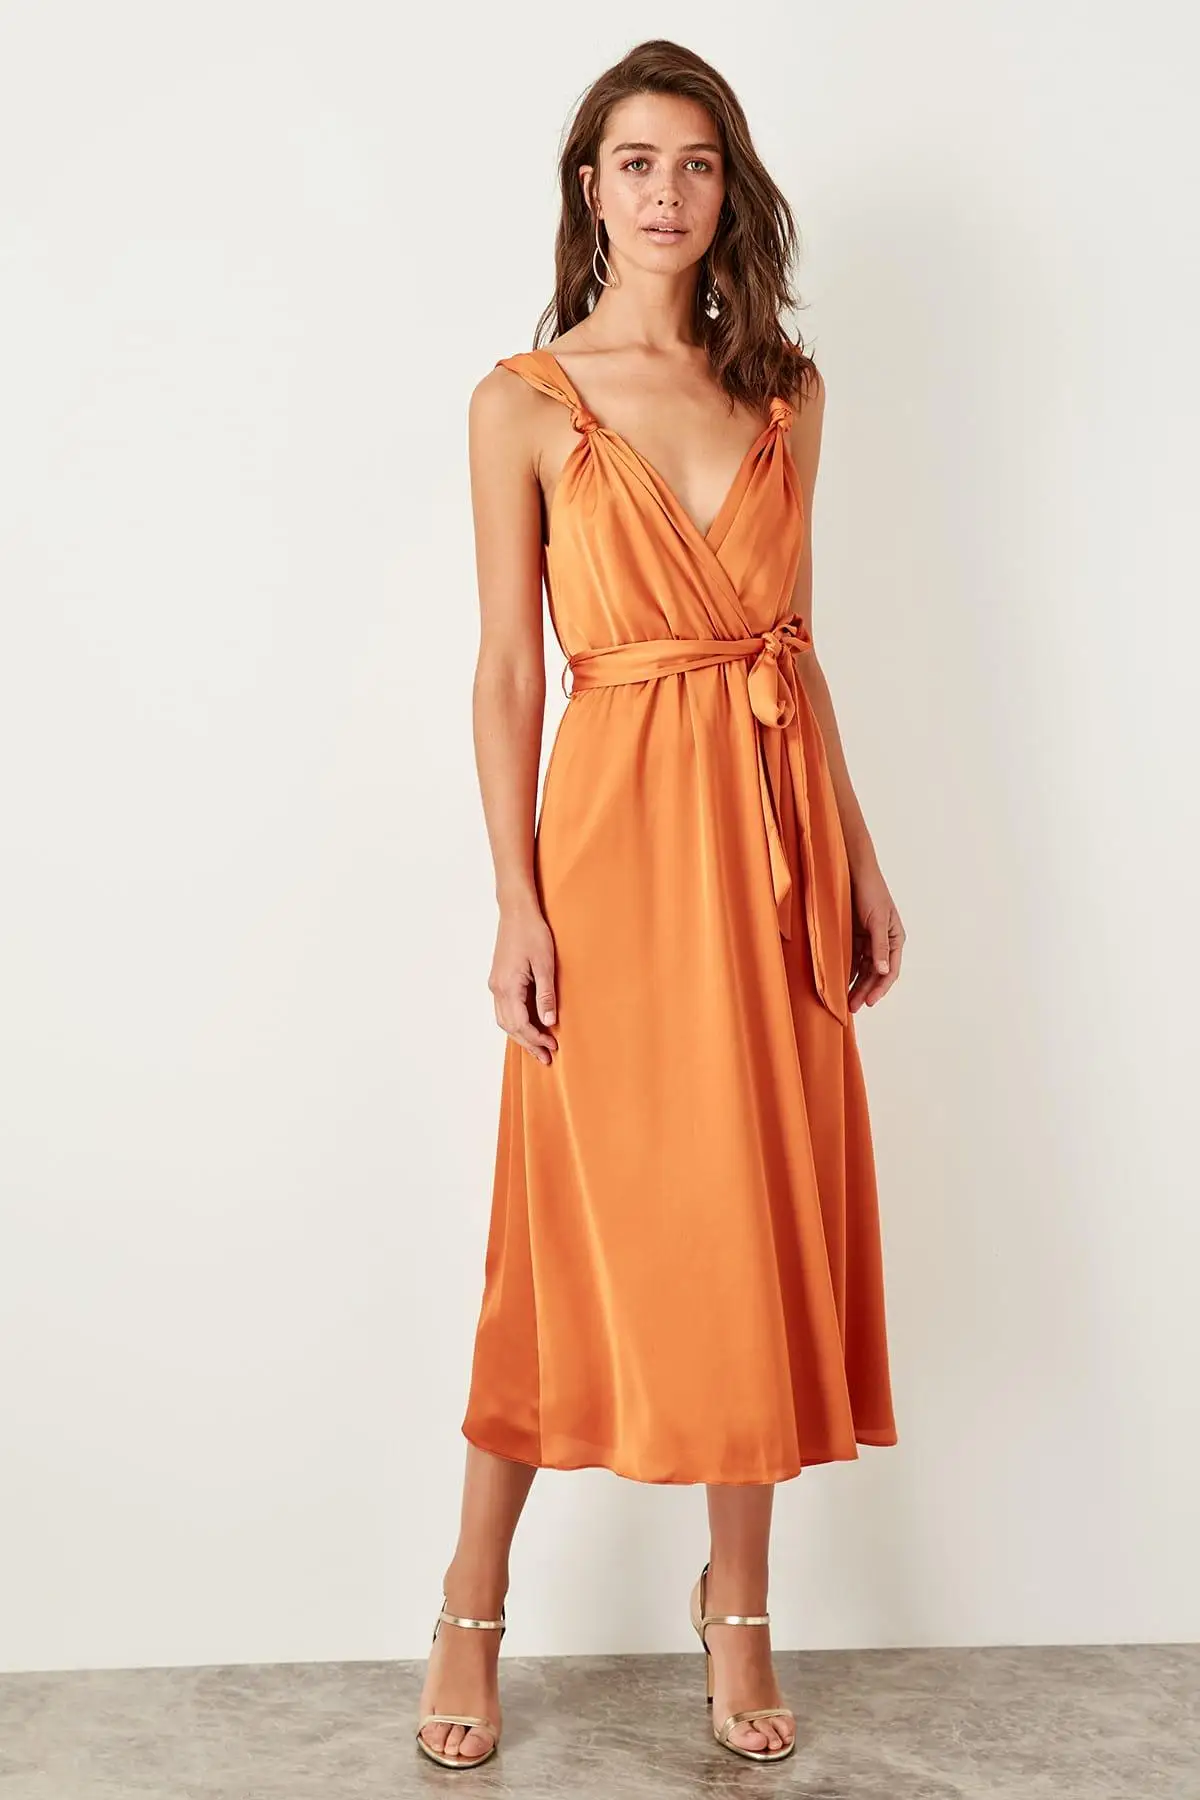 Оранжевое платье с поясом TPRSS19BB0283 от AliExpress RU&CIS NEW